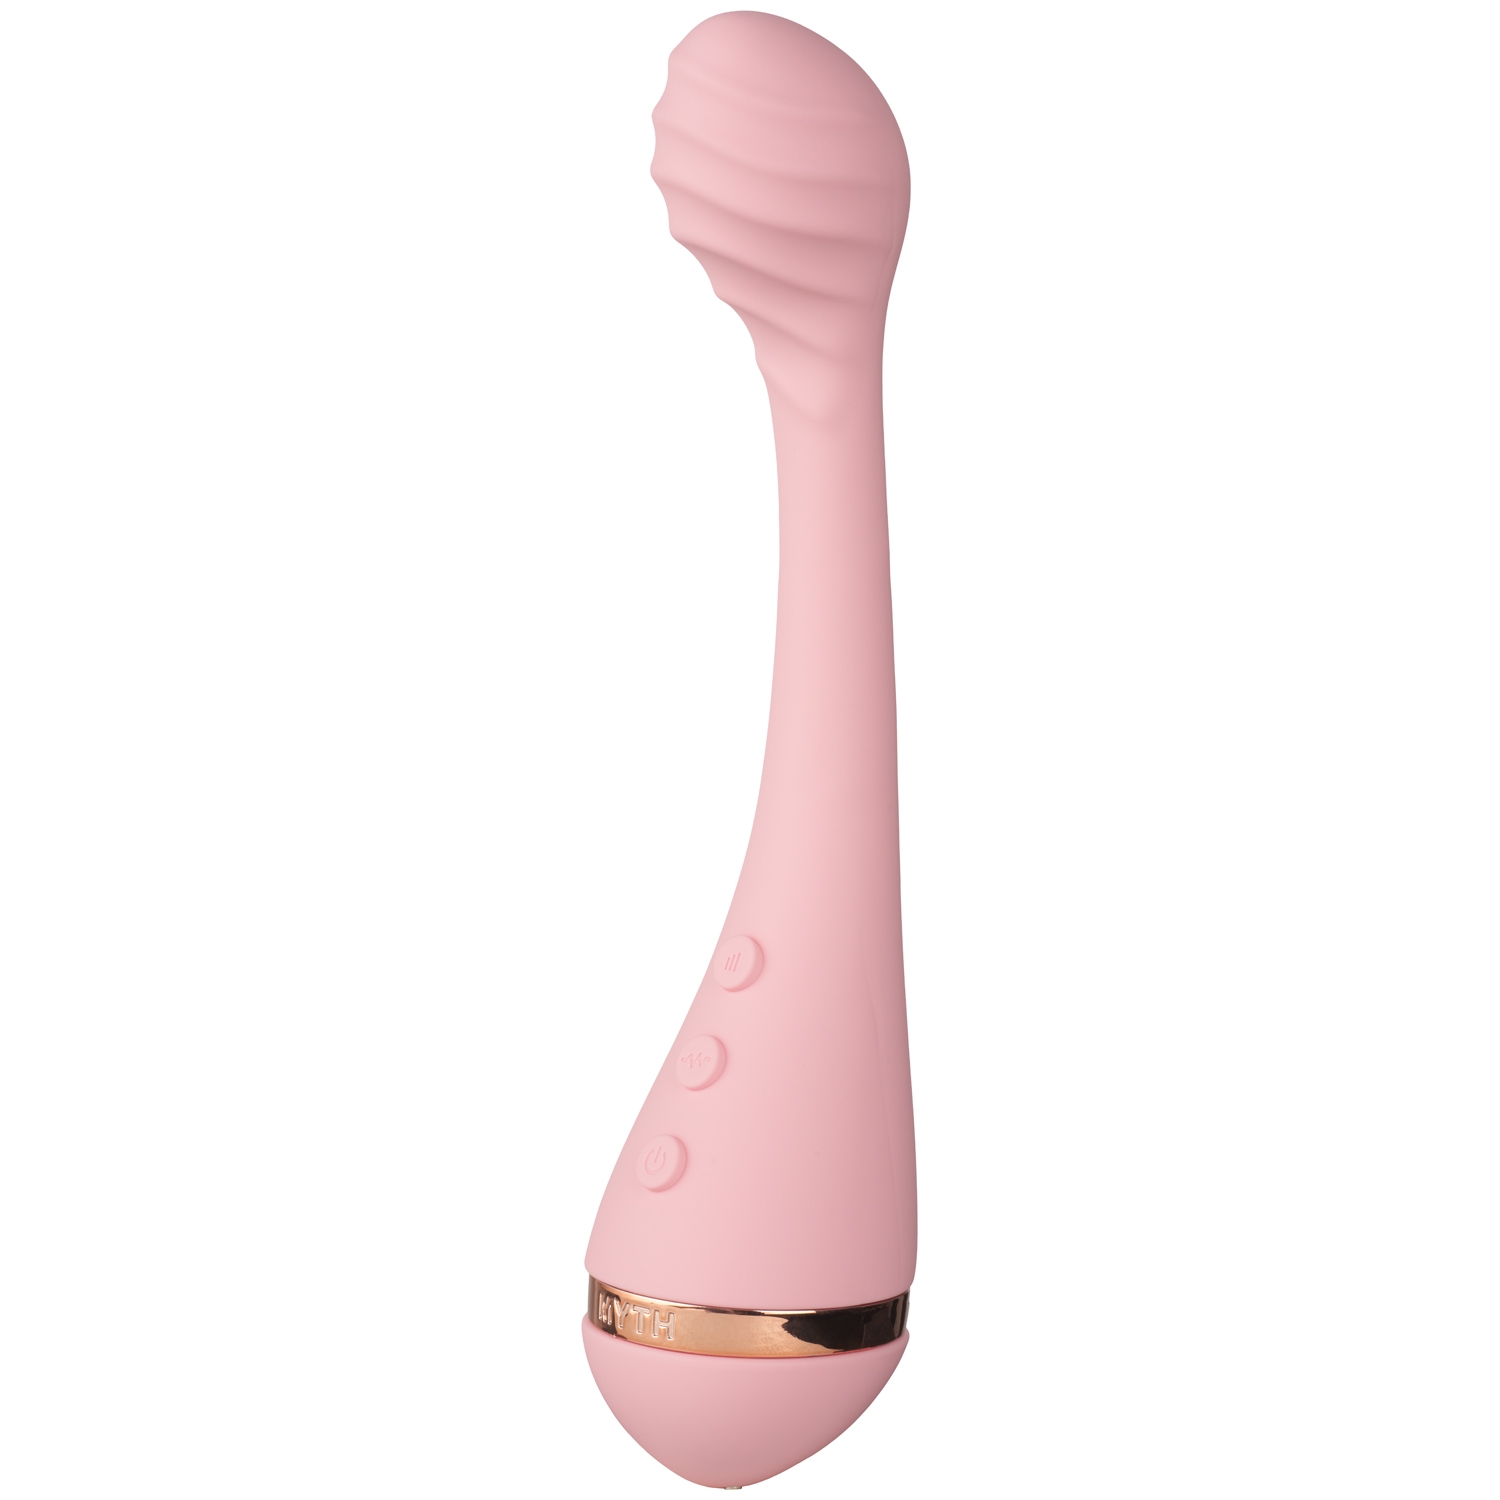 Vush Myth G-Punkts Vibrator - Pink